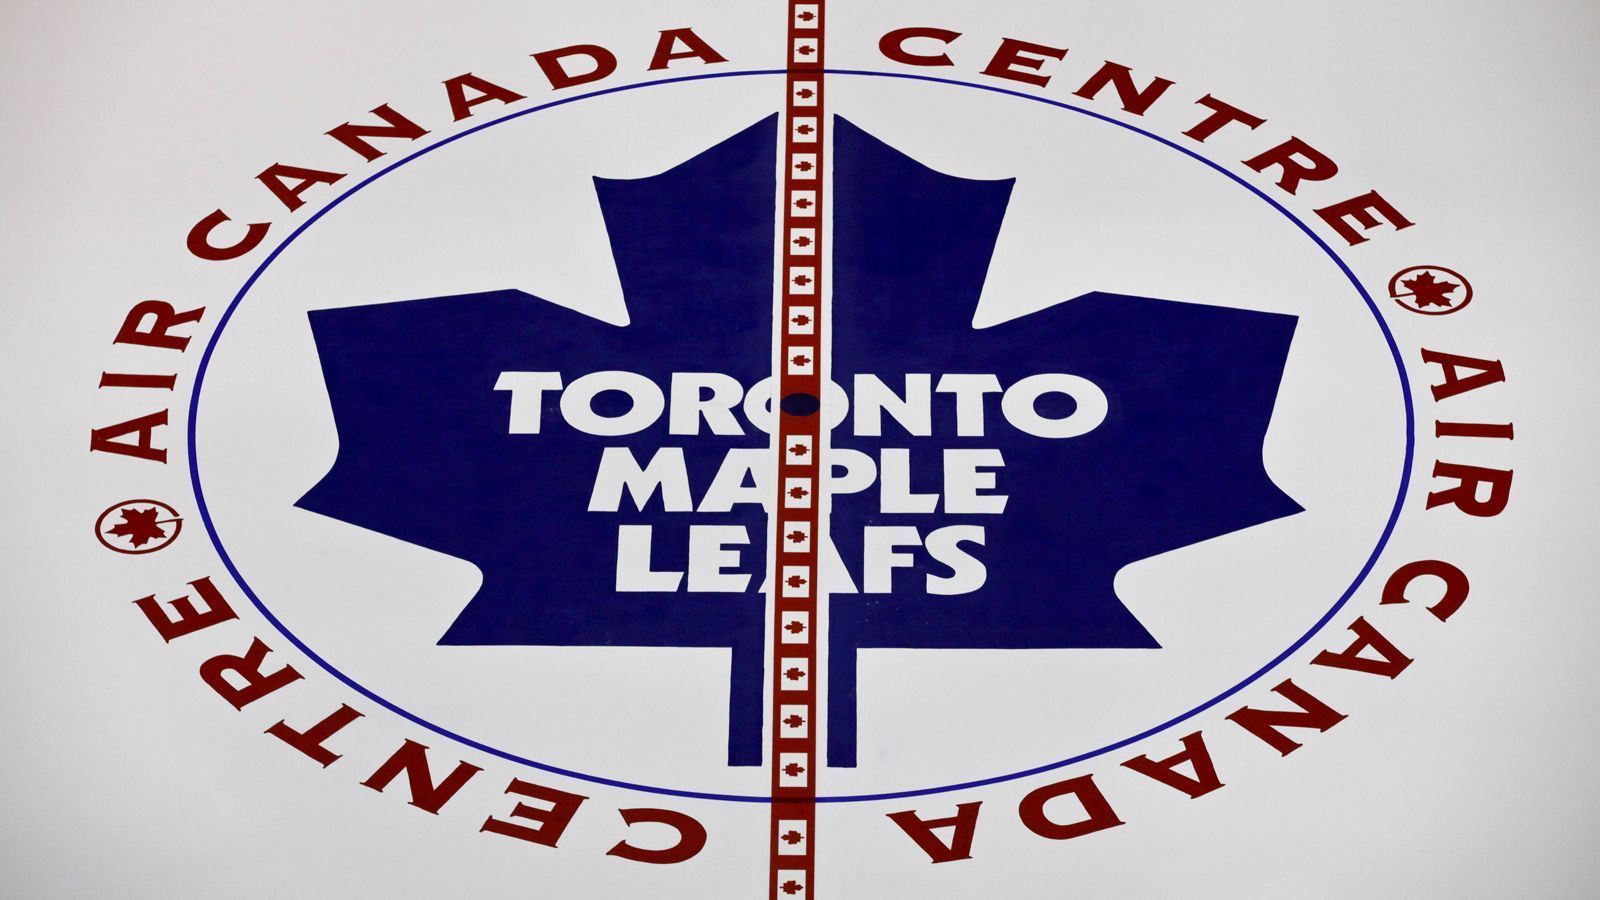 <strong>Toronto Maple Leafs</strong><br>
                Das Eishockey-Team aus Toronto war von 1917 bis 1919 als Toronto Arenas aktiv, daraufhin bis zum Jahre 1927 als Toronto St. Patricks. Anschließend kaufte Conn Smythe das Team auf und benannte es nach dem Maple Leaf Regiment, für das er selber im Ersten Weltkrieg gekämpft hatte.
